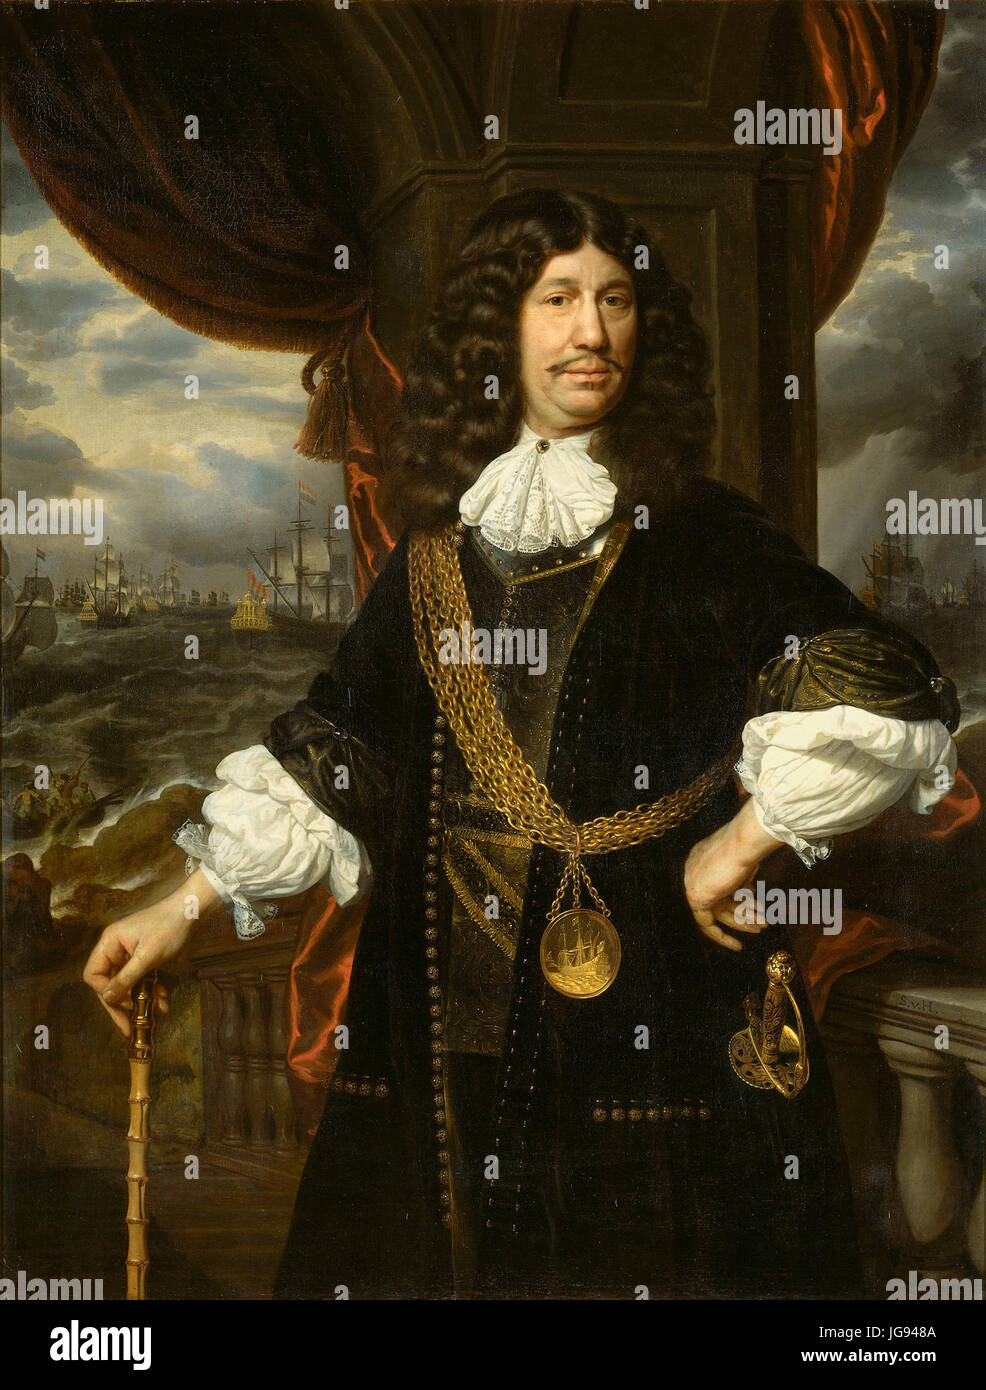 Mattheus van den Broucke (1620-85). Raad van Indië, getooid reunió de gouden keten en penning morir puerta hem de VOC en 1670 werden geschonken Rijksmuseum SK-A-158 Foto de stock